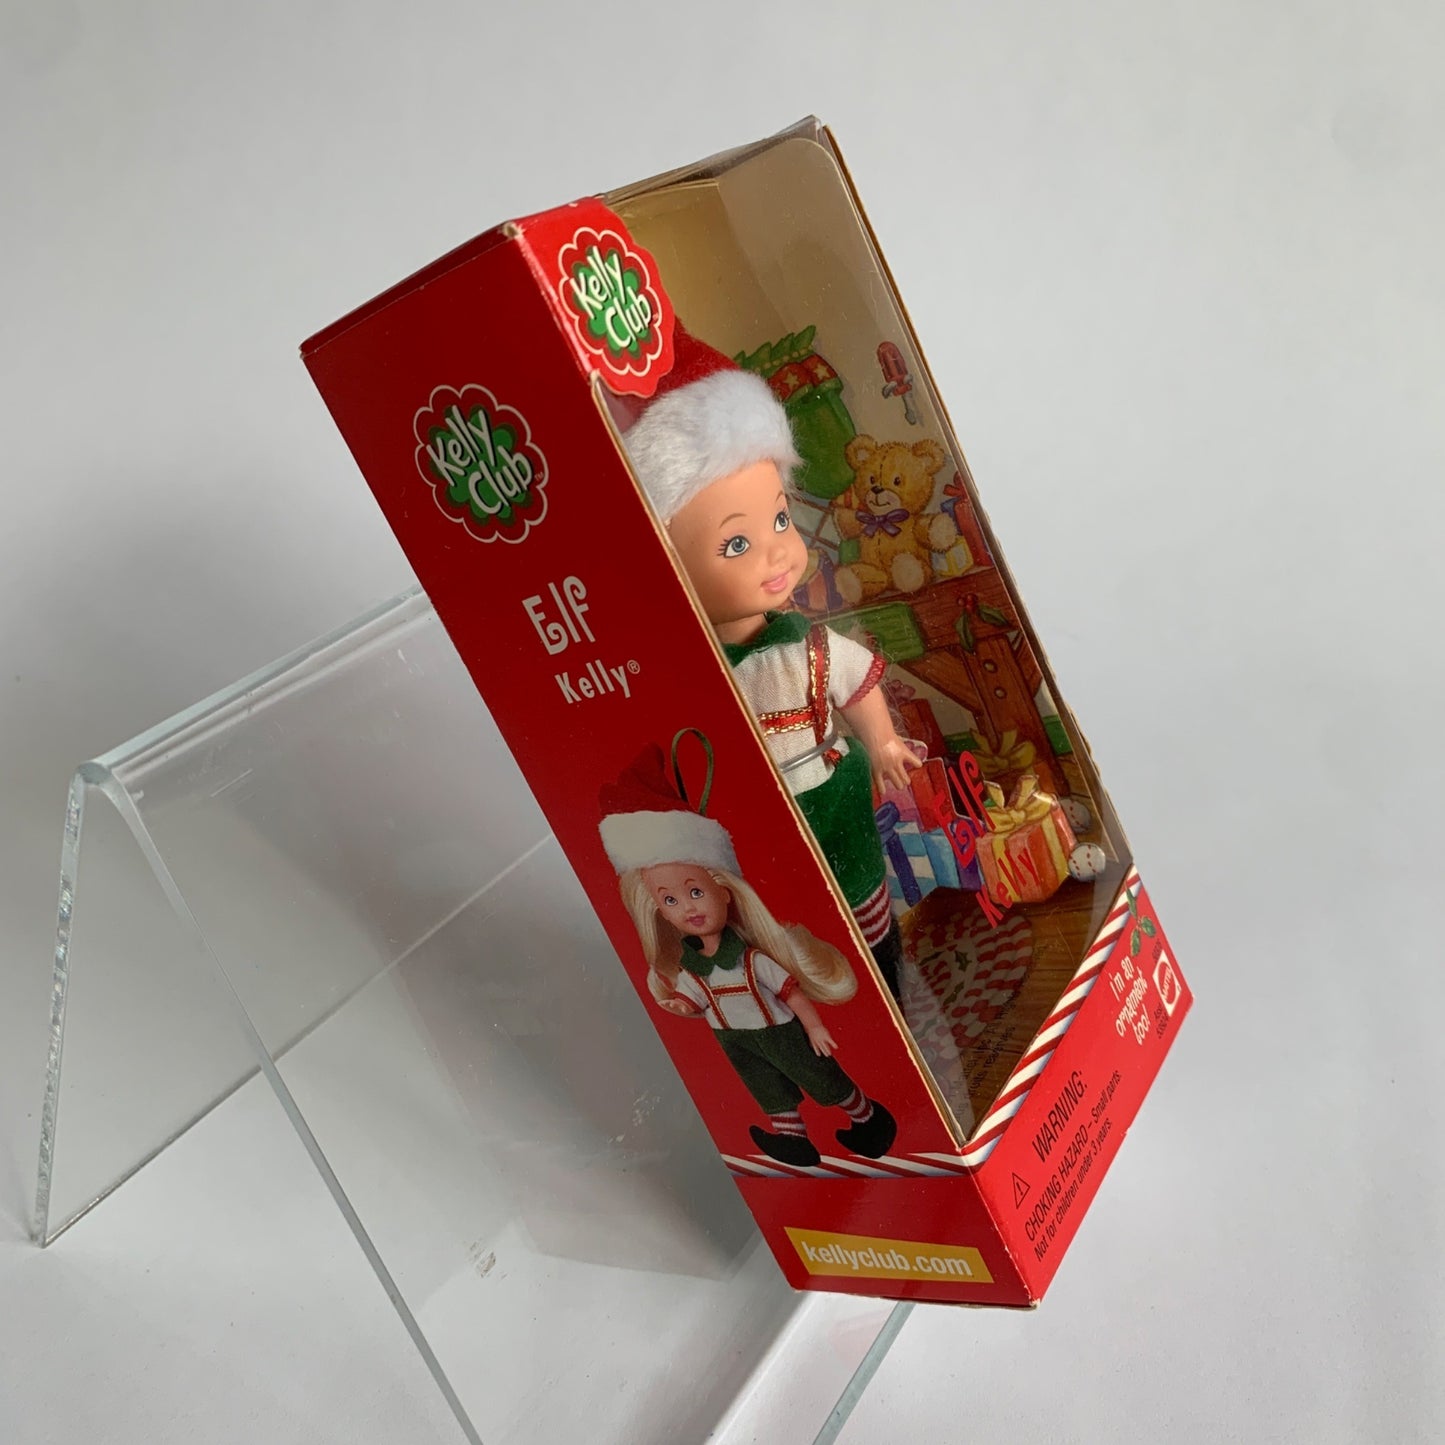 Mattel Kelly Club Elf Ornament Doll Toy Vintage New in Box